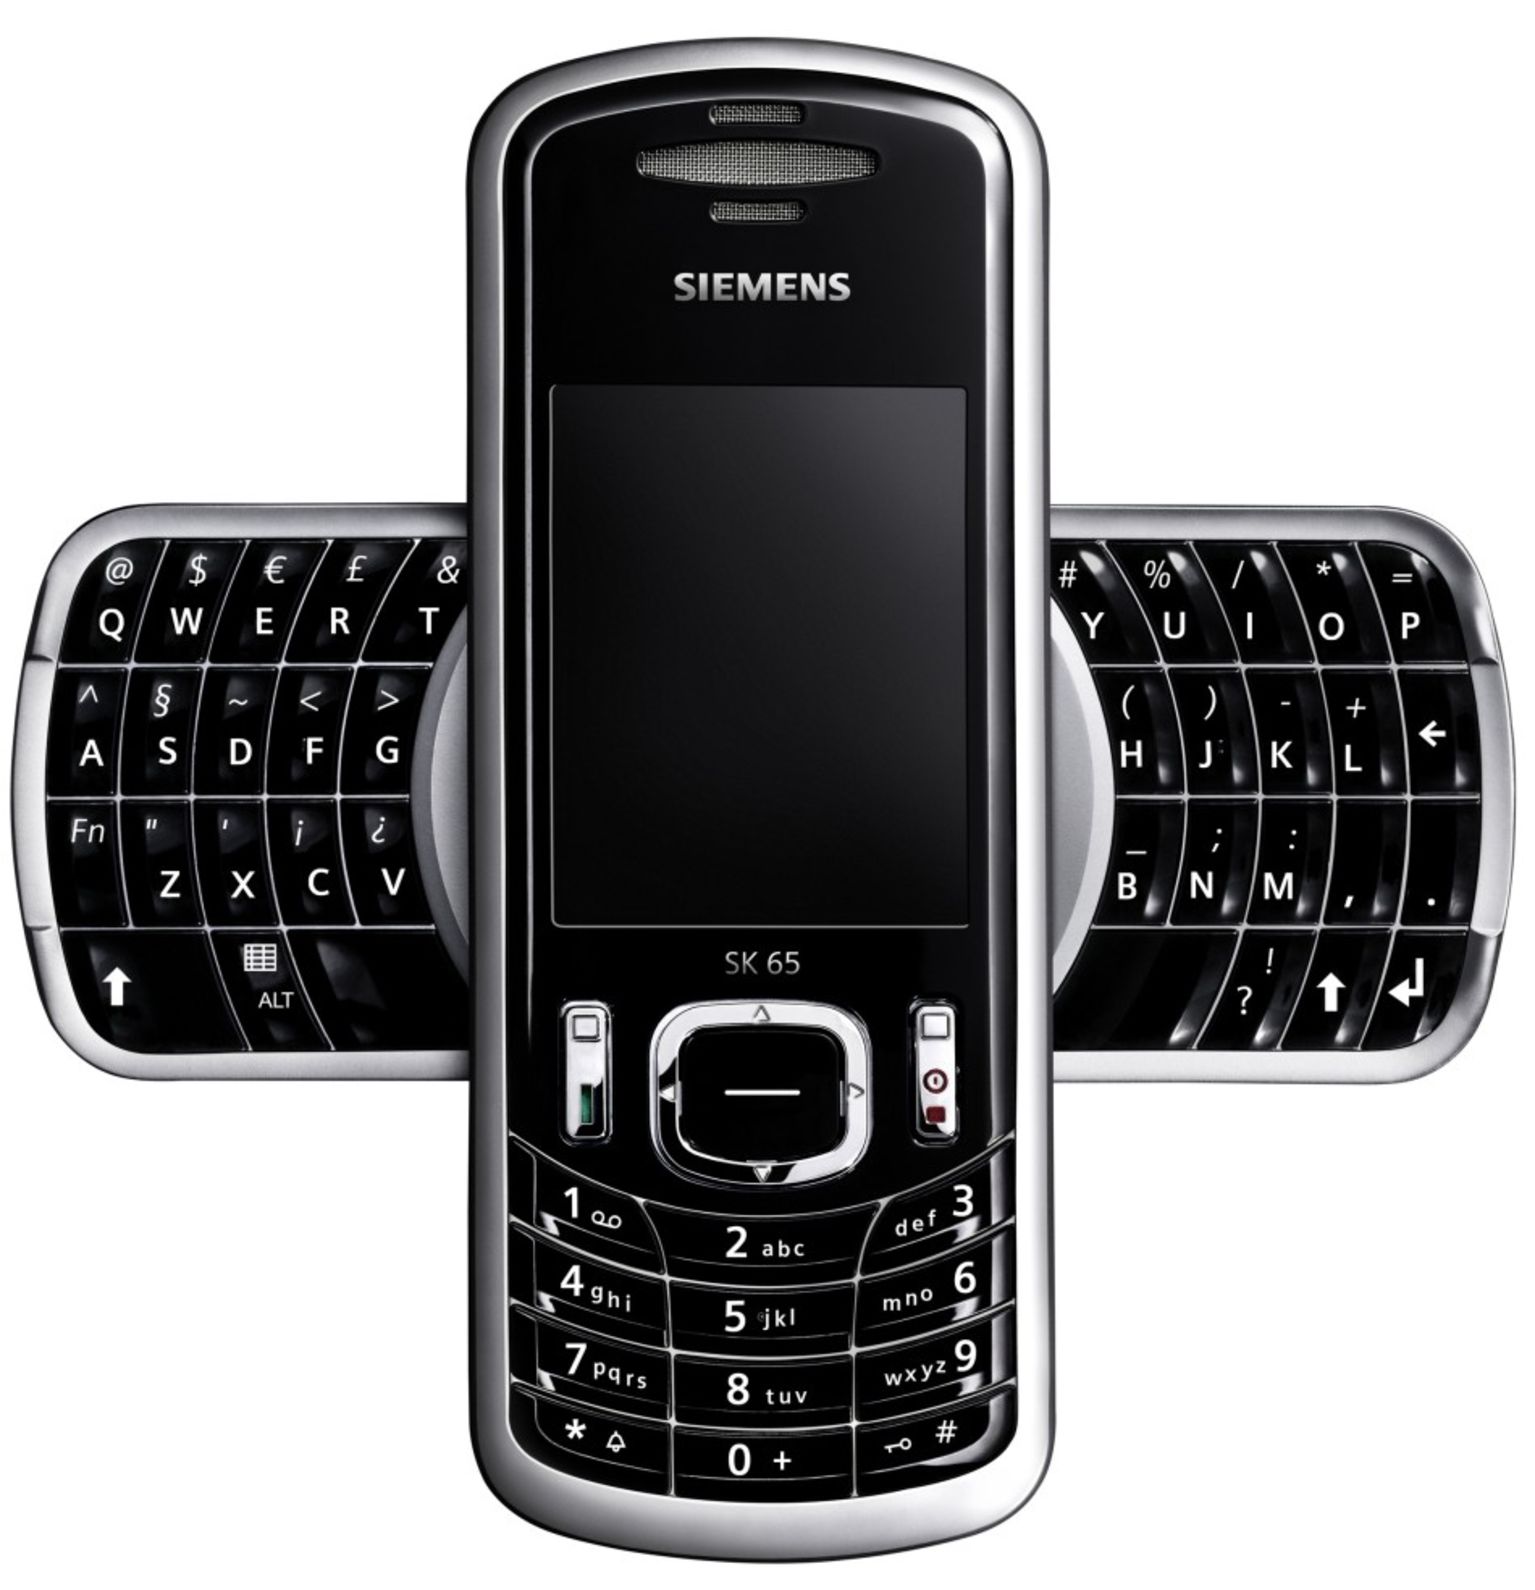 Сотовый телефон германии. Телефон Siemens sk65. Nokia sk65. Мобильный телефон кнопочный Siemens. Siemens 2004 Phone.